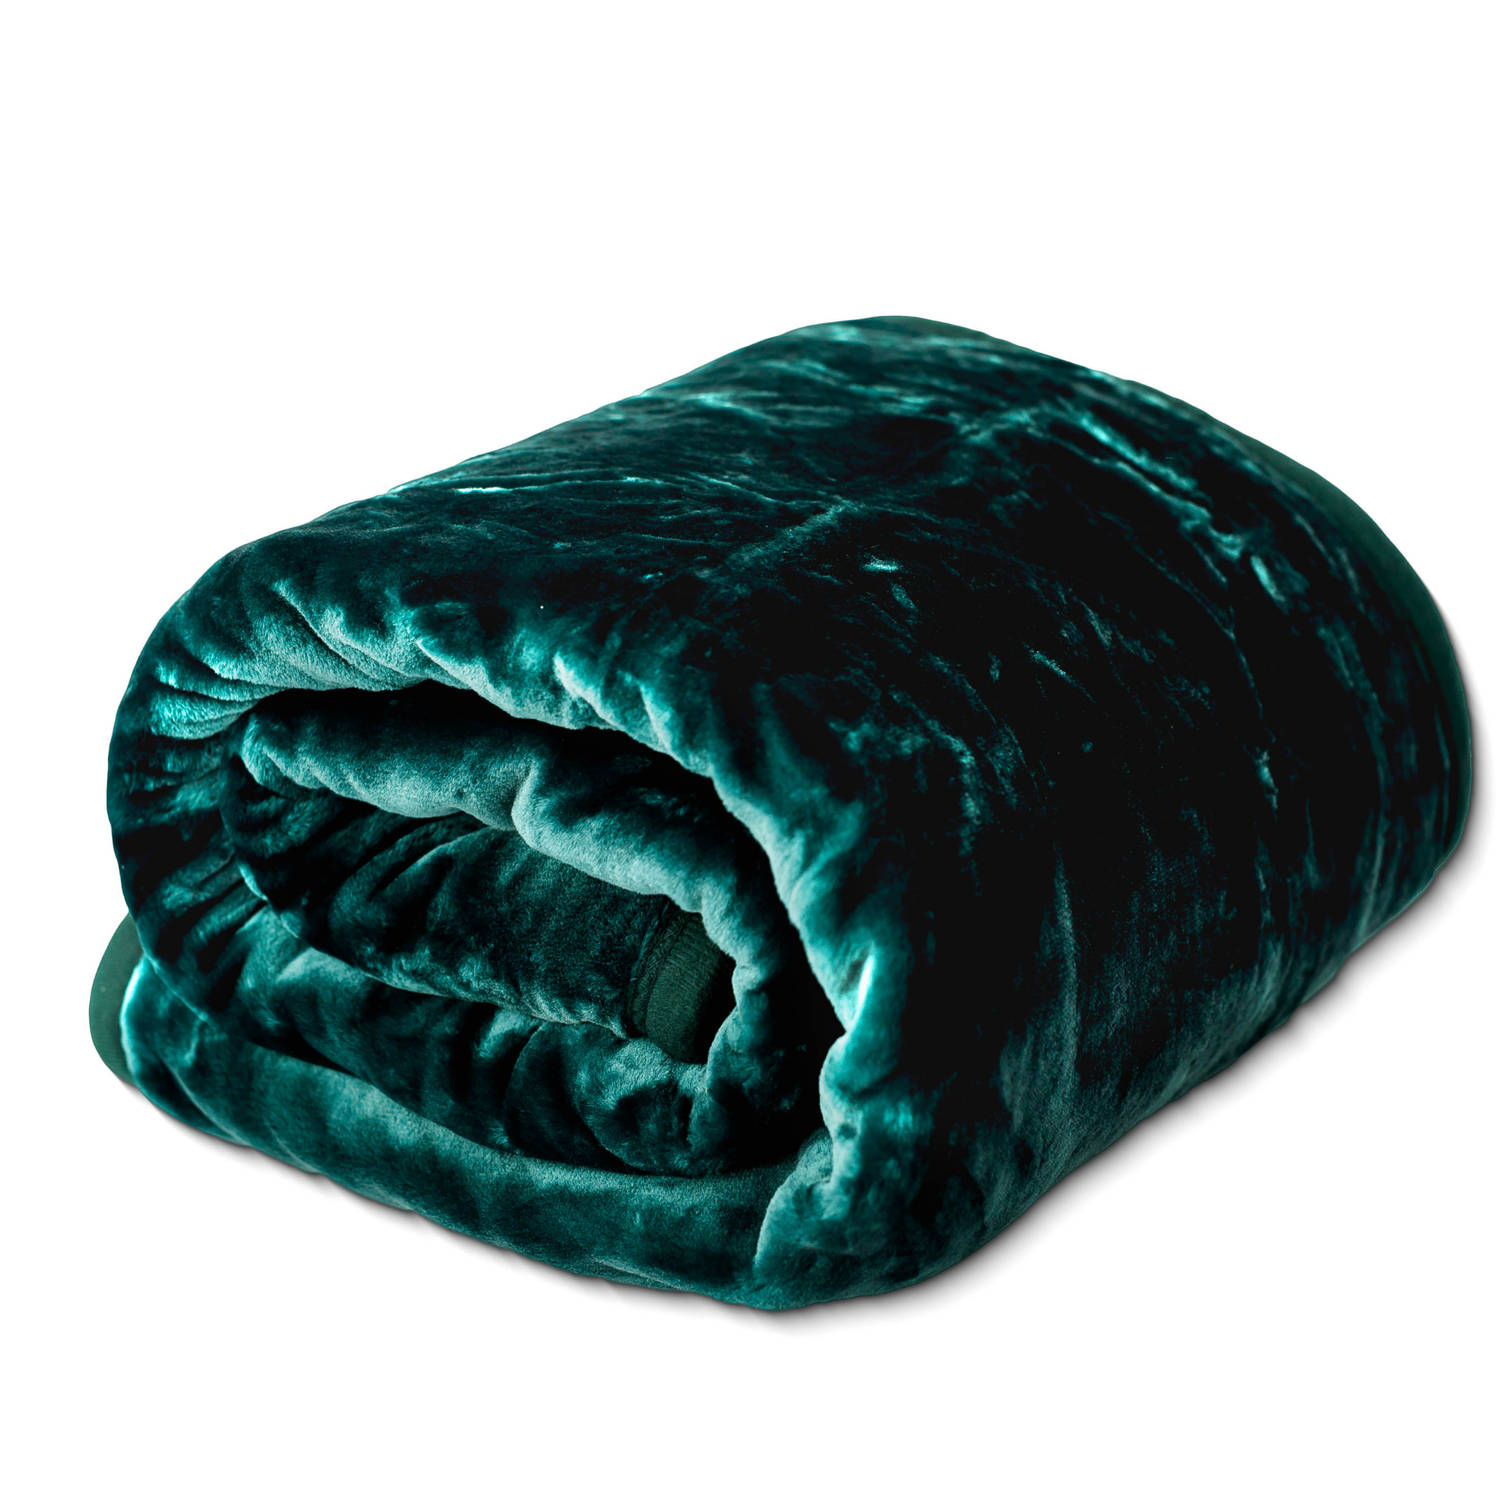 HappyBed Fleexe deken groen | 150x200 cm - Heerlijk zacht fleece plaid - Warmte deken - Woon deken - Bankhoes Sprei - deken